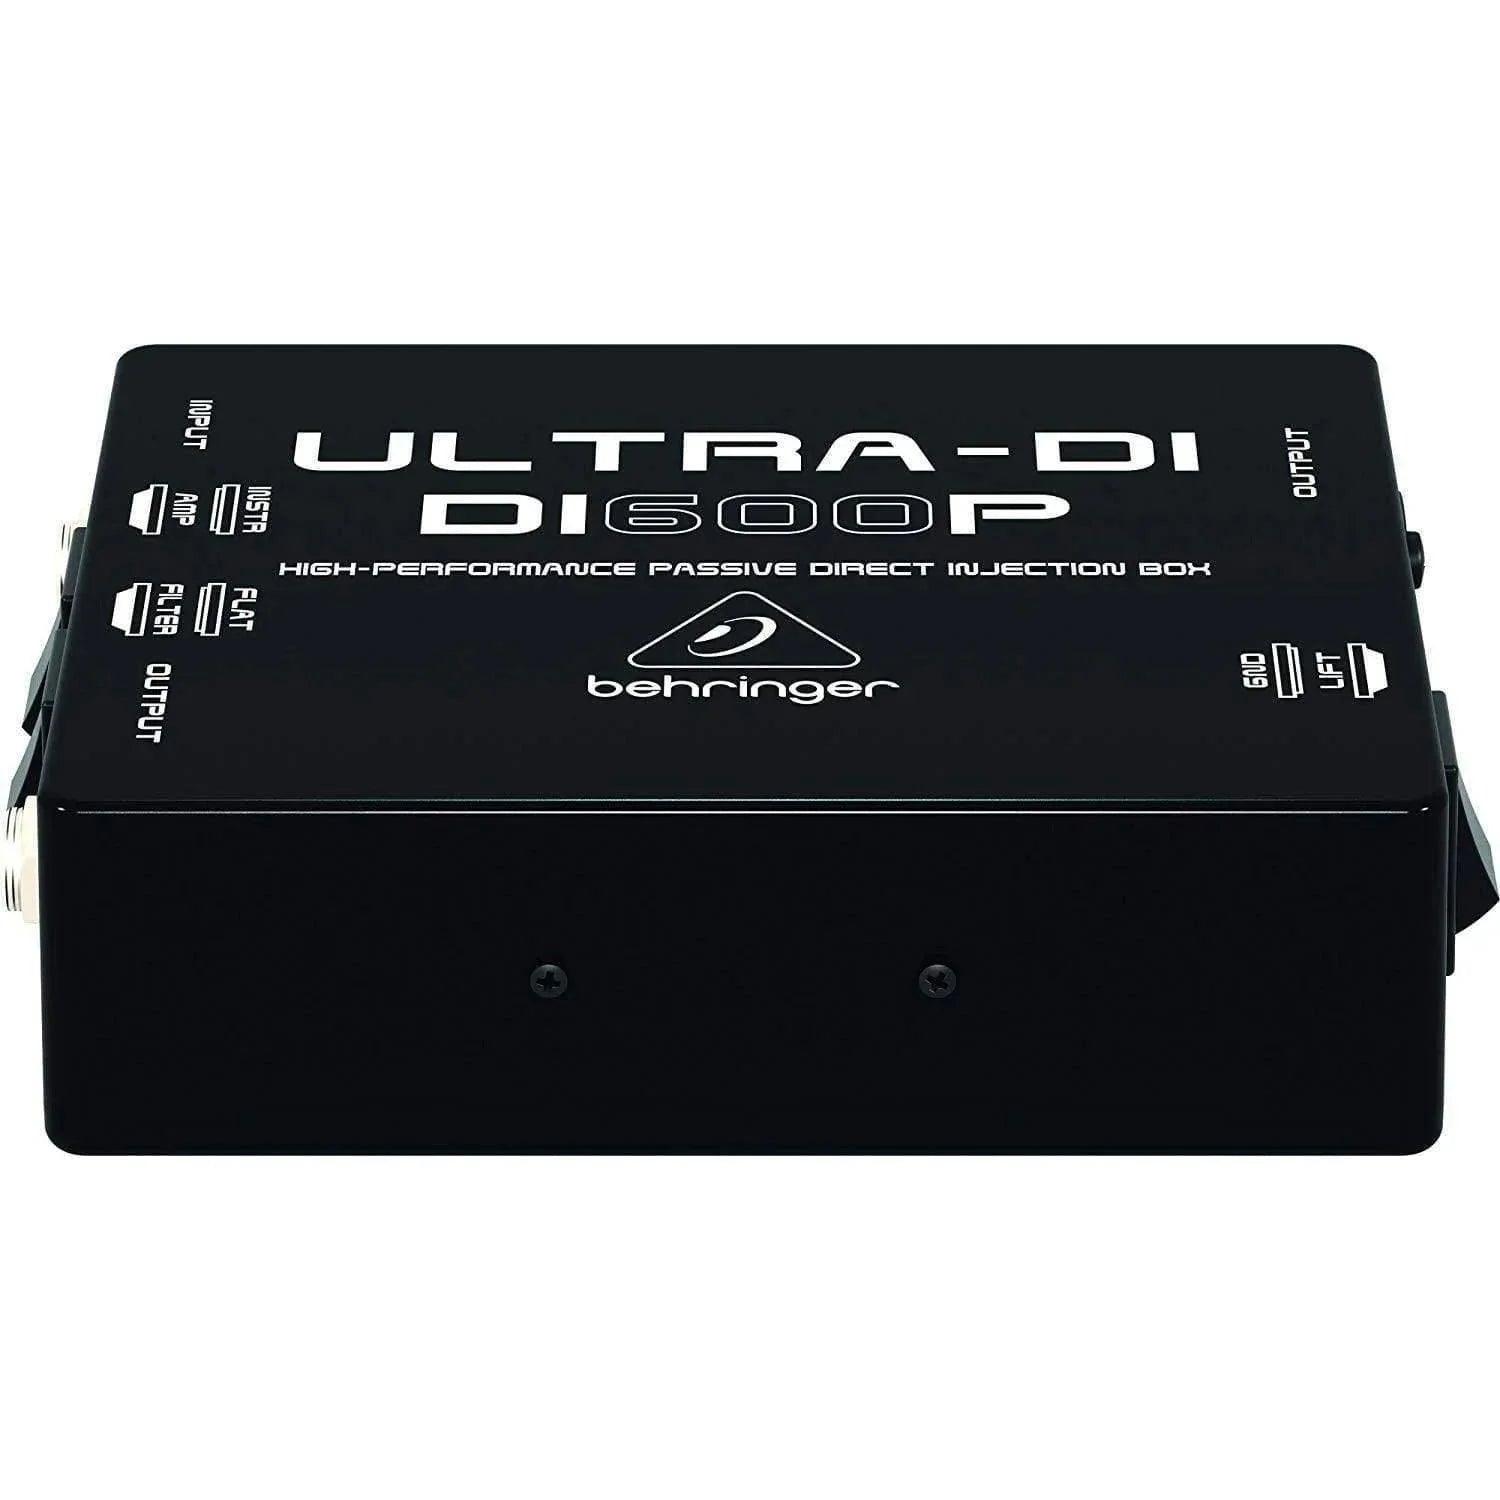 Behringer Ultra-DI DI600P Signal Processor